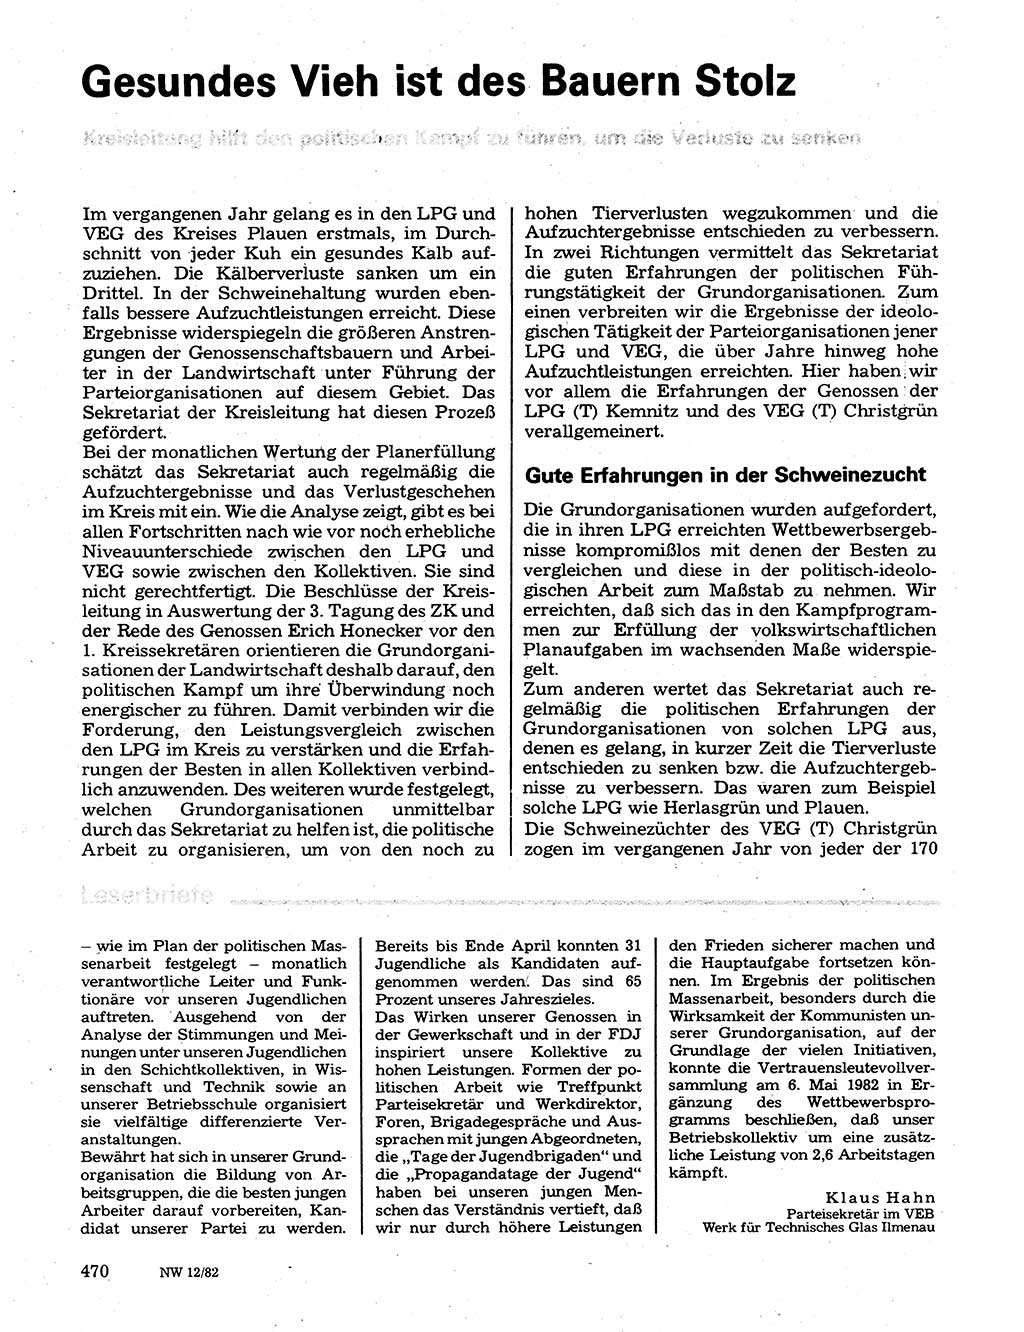 Neuer Weg (NW), Organ des Zentralkomitees (ZK) der SED (Sozialistische Einheitspartei Deutschlands) für Fragen des Parteilebens, 37. Jahrgang [Deutsche Demokratische Republik (DDR)] 1982, Seite 470 (NW ZK SED DDR 1982, S. 470)